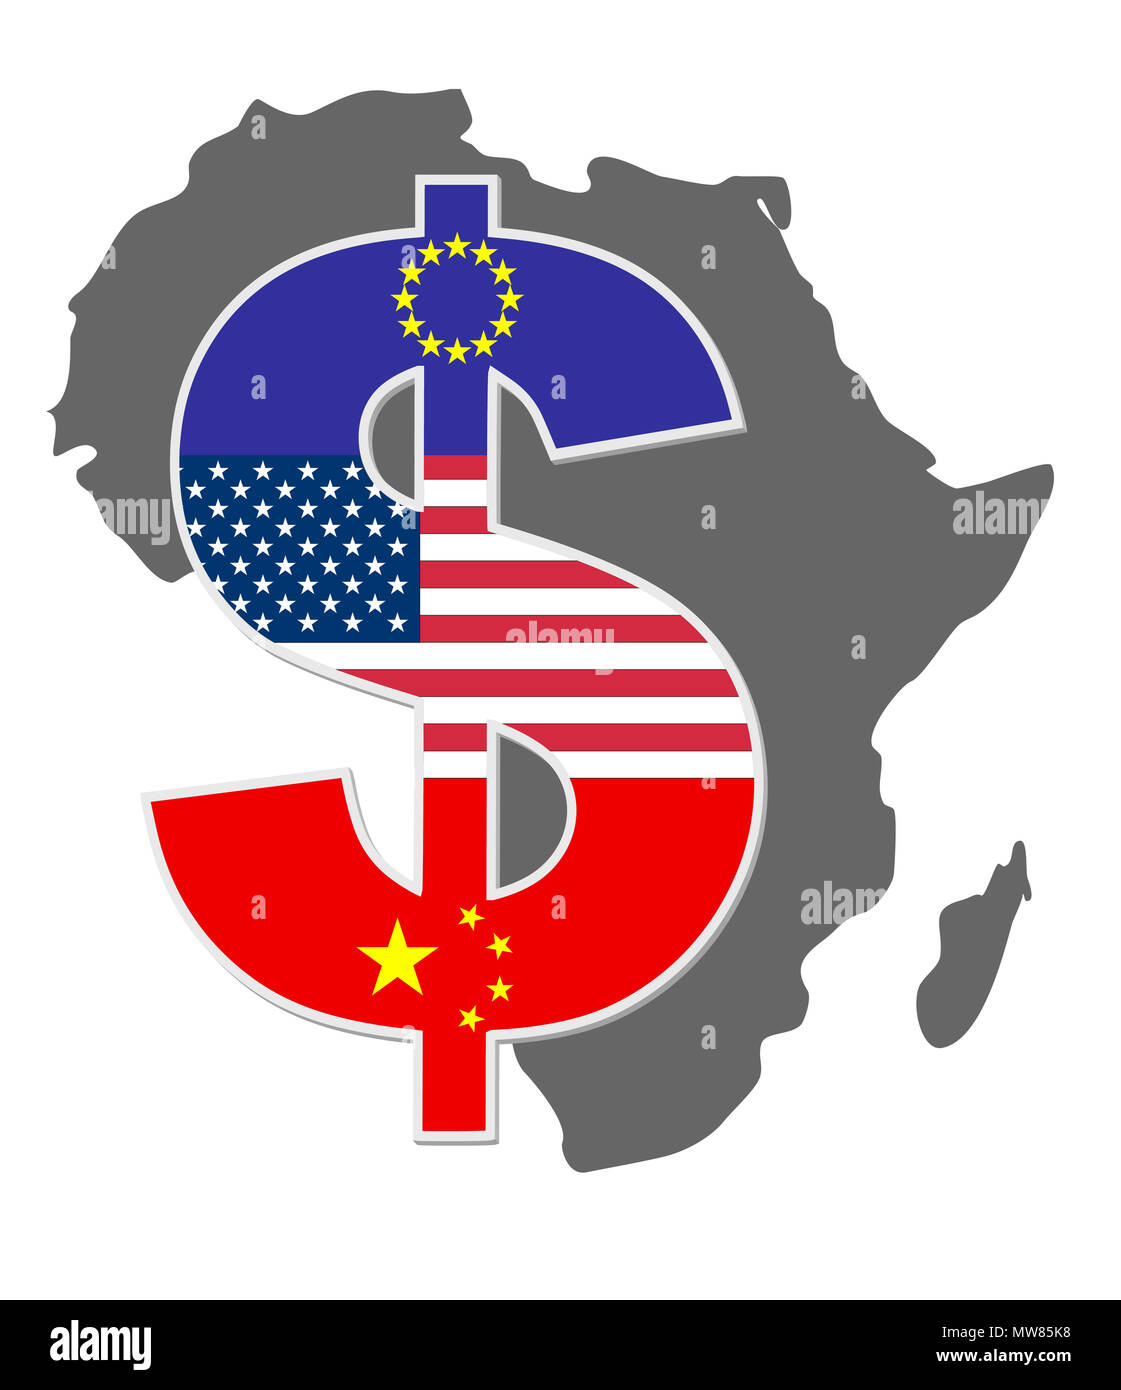 Les pays africains sont exploités par les pays occidentaux et la Chine Banque D'Images